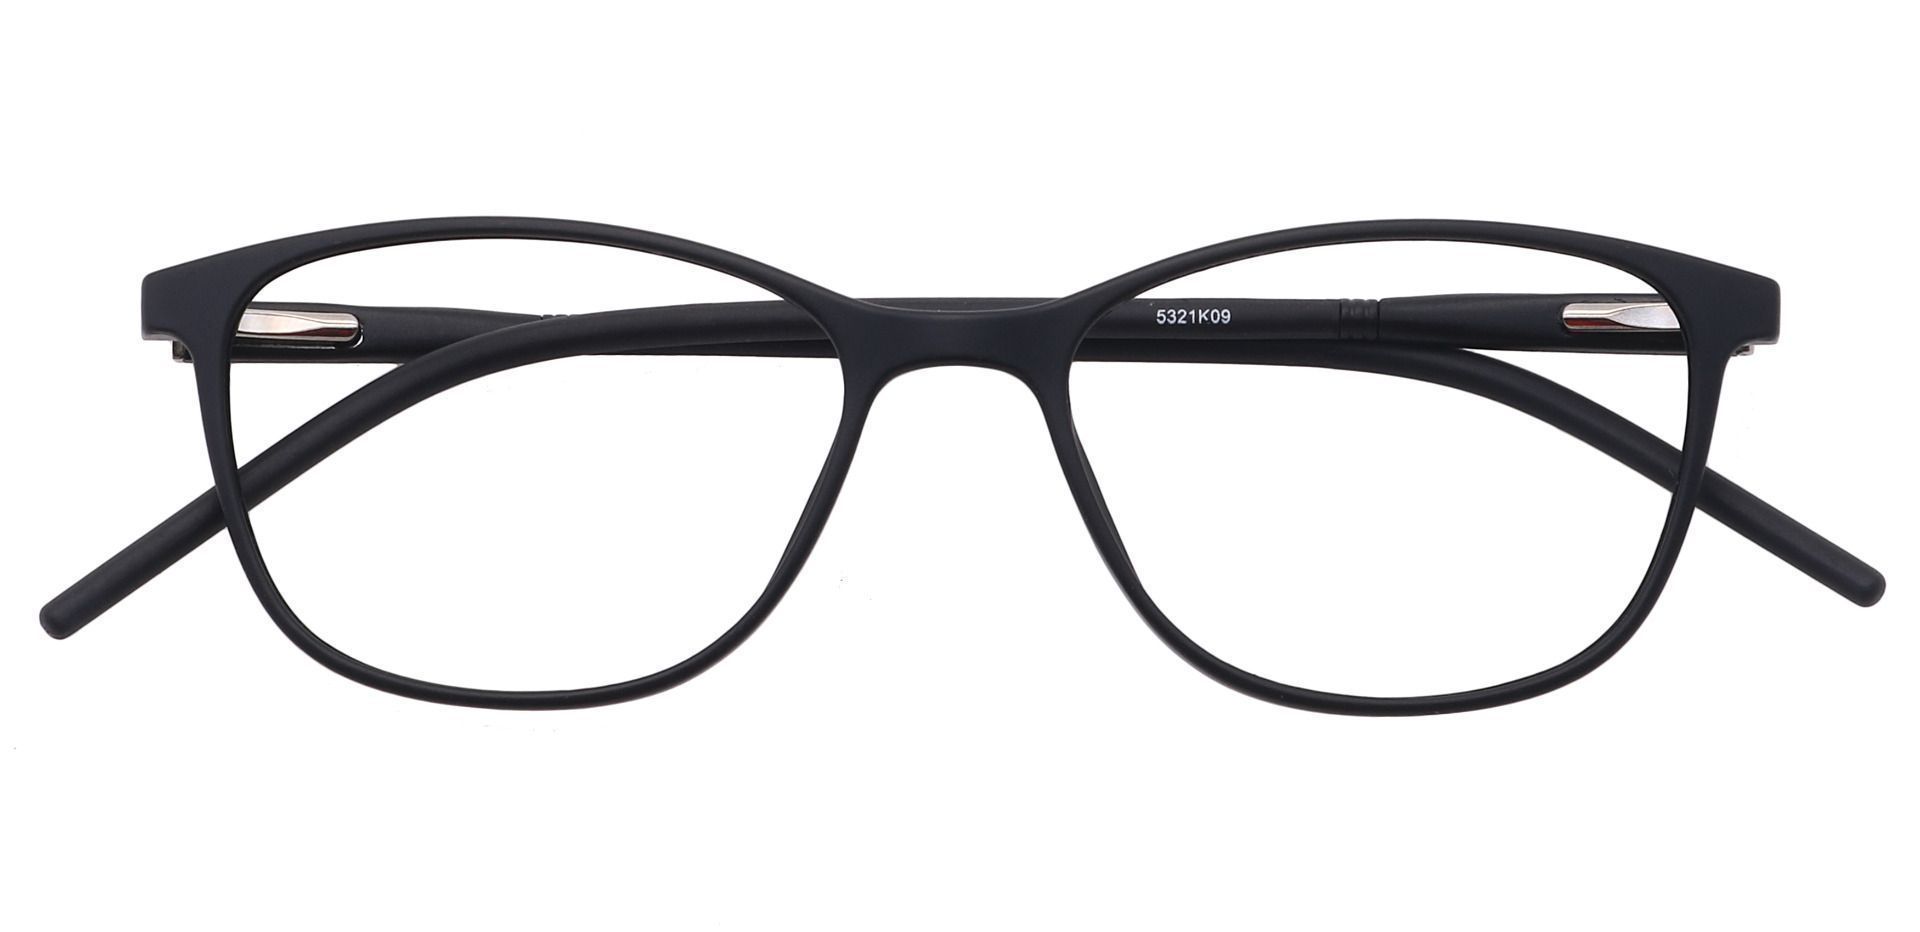 Hazel Square Non-Rx Glasses - Black